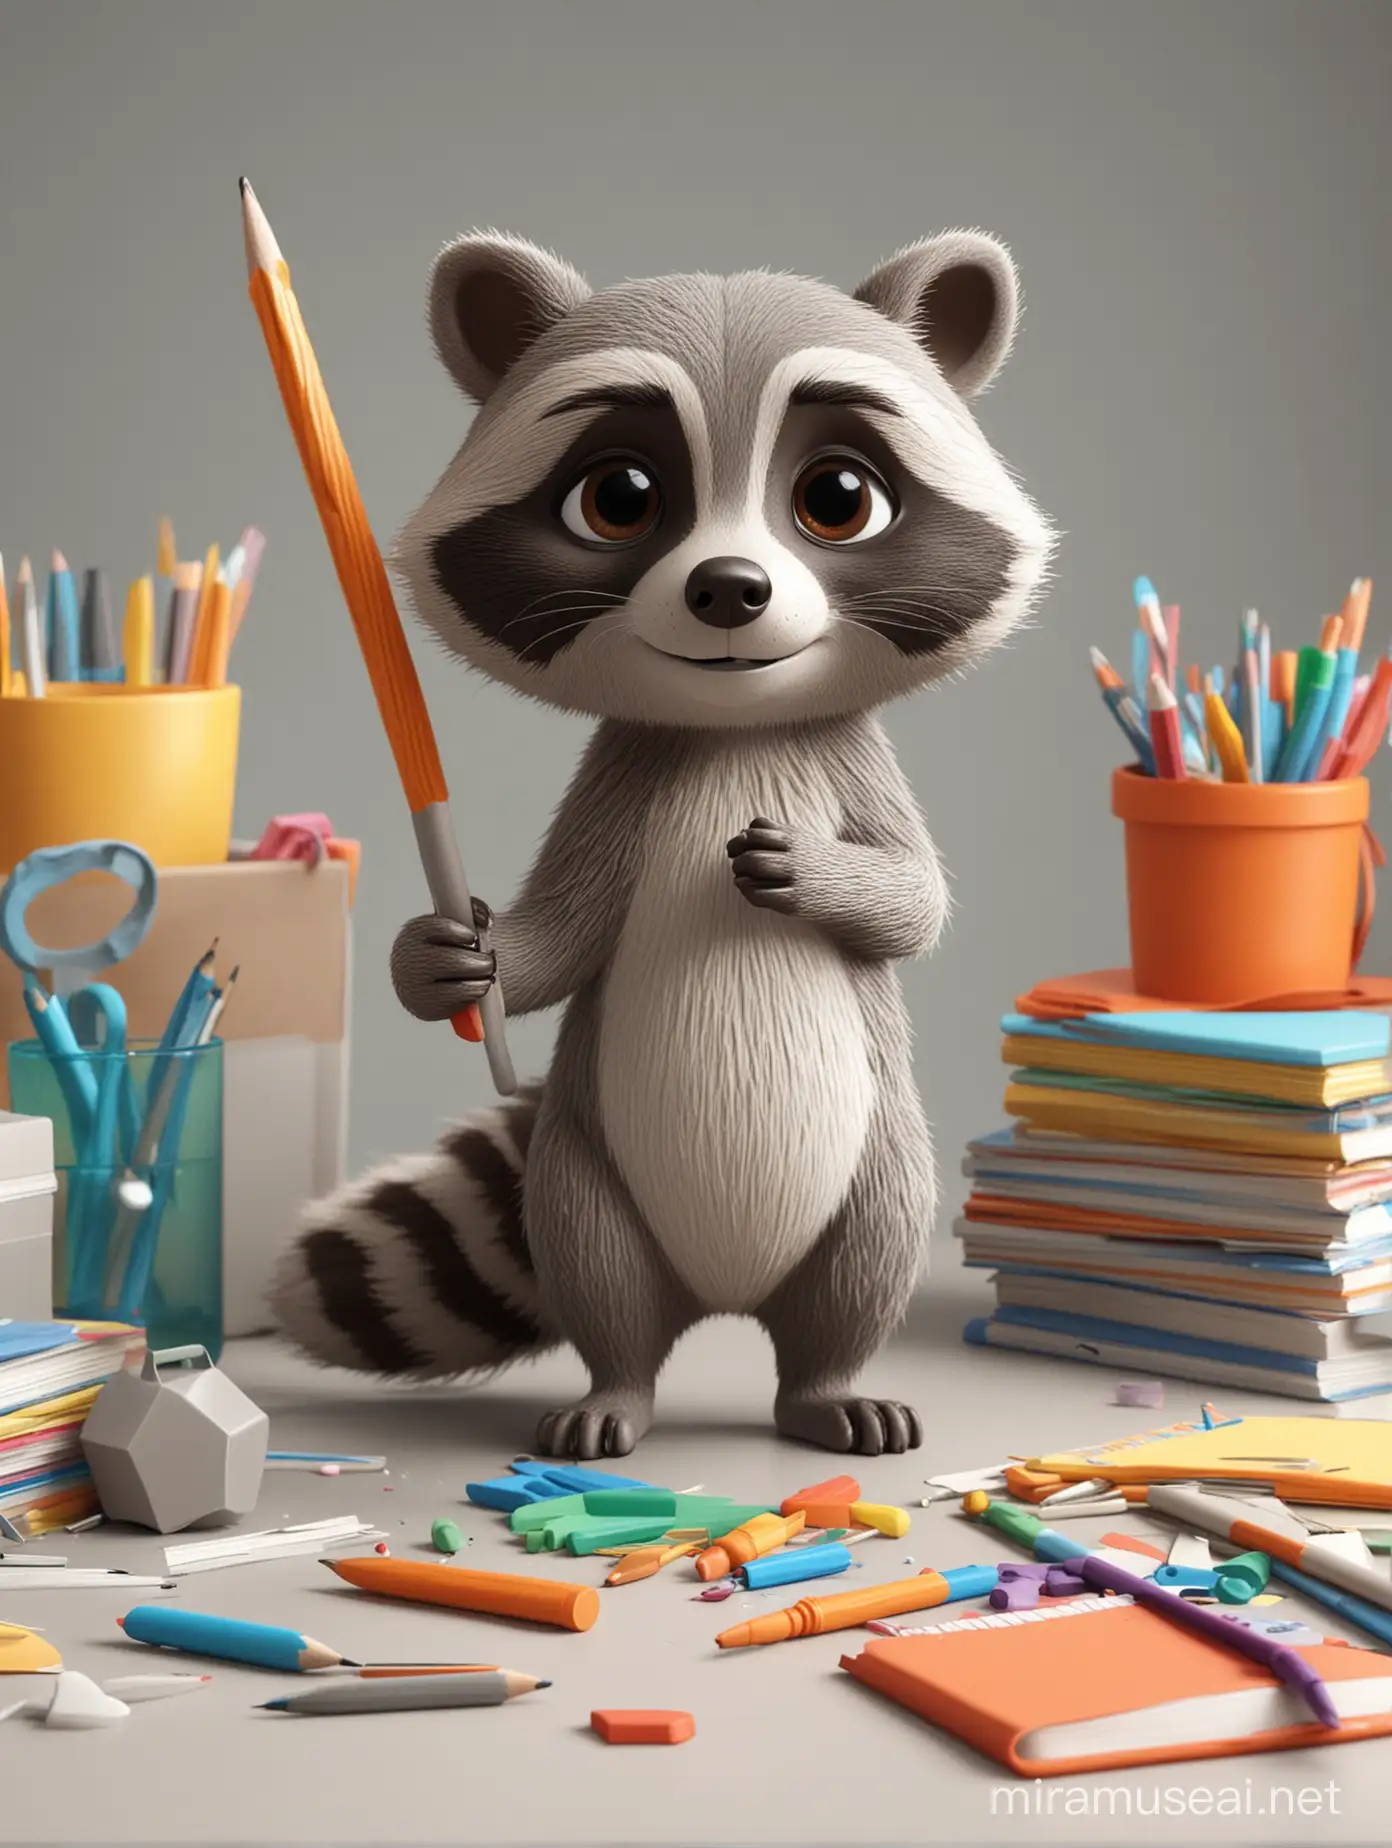 3D Raccoon Amidst Vibrant School Supplies